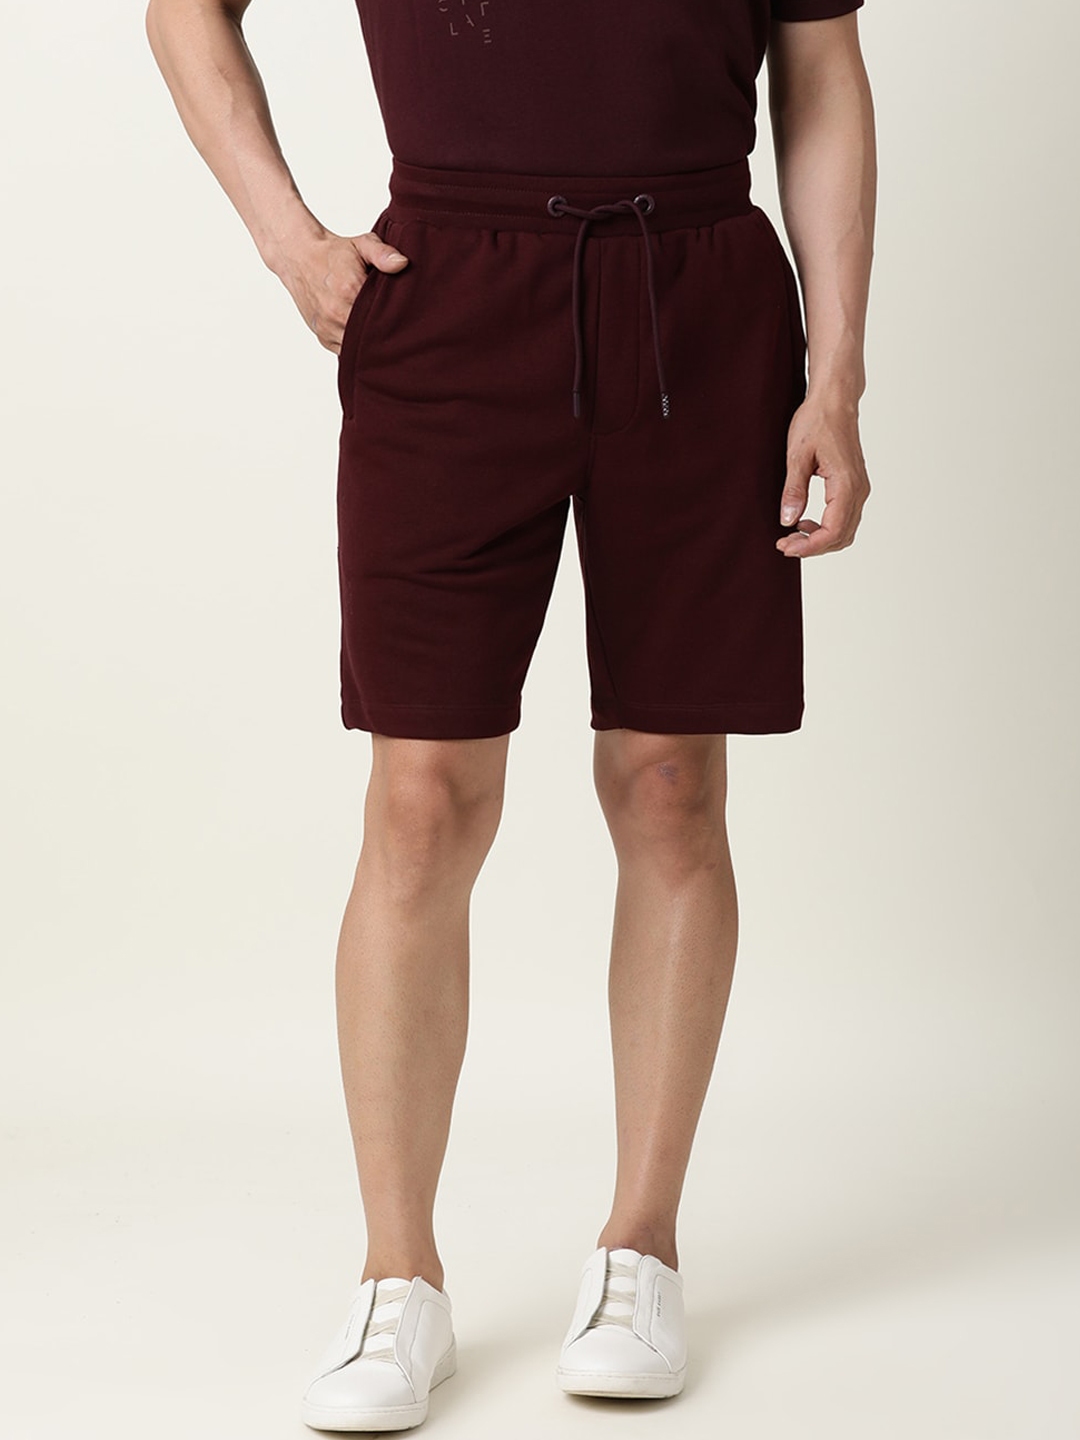 Buy ARTICALE Men Slim Fit Shorts - Shorts for Men 18405226 | Myntra